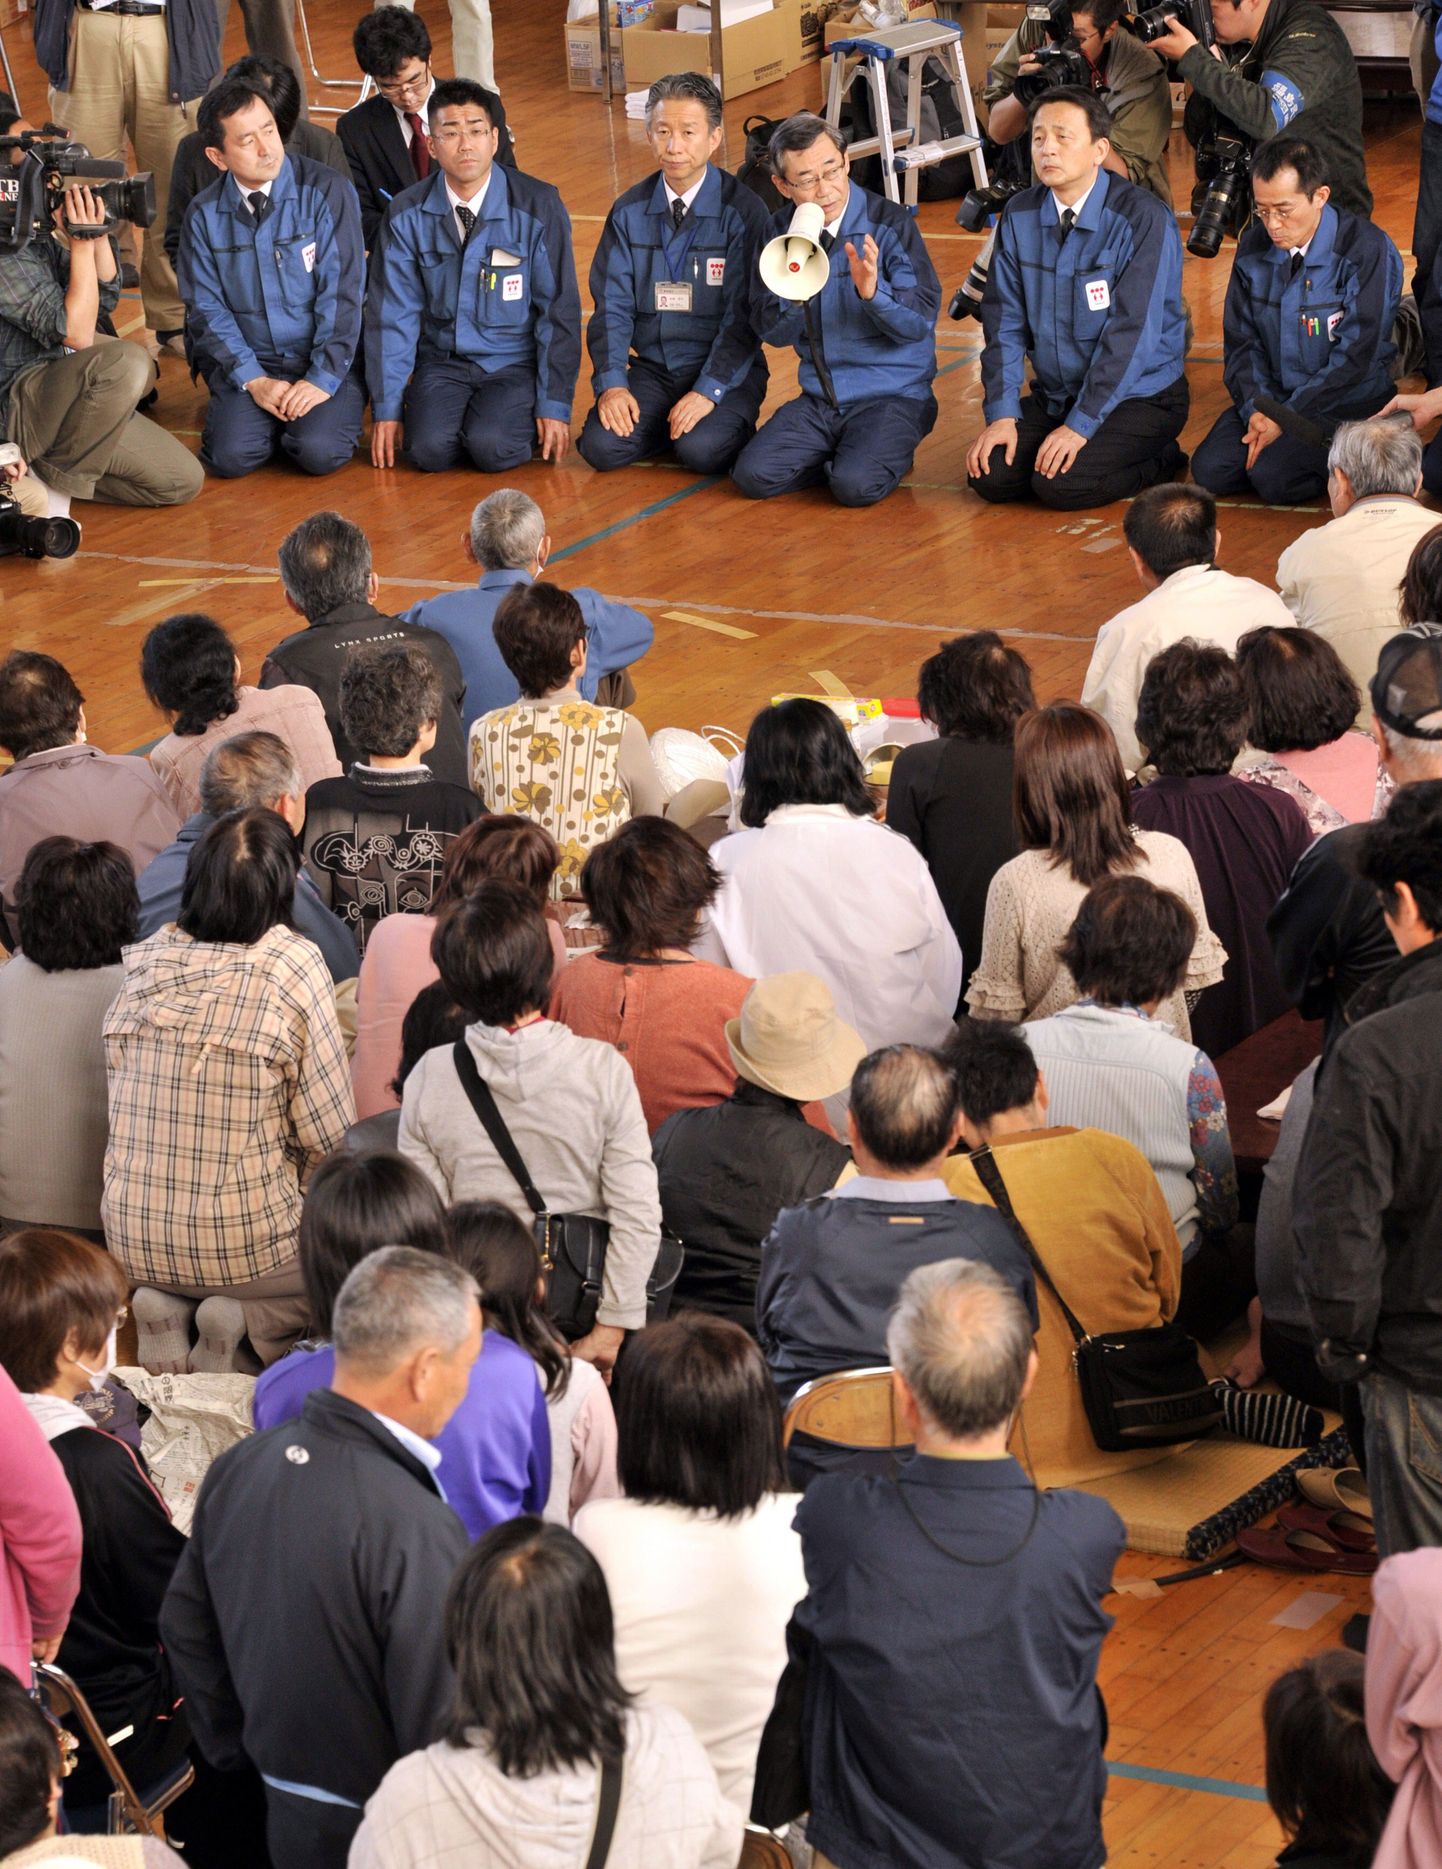 Jaapani firma käskis 2700 töötajal ühesuguse soengu lõigata